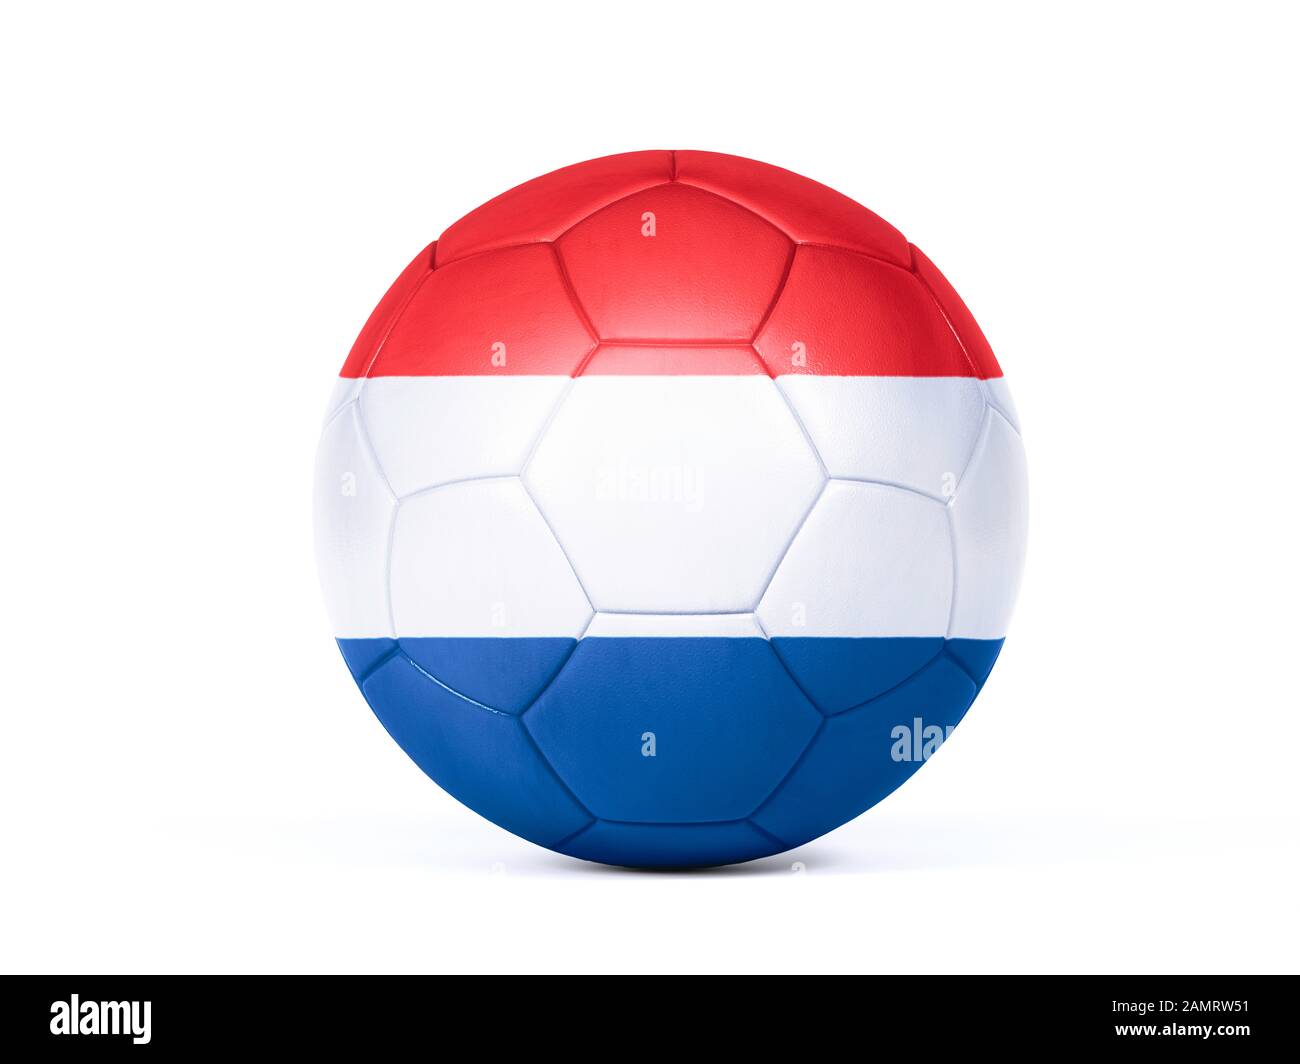 Pallone da calcio o da calcio con i colori della bandiera nazionale olandese concettuale del supporto di squadra in campionati o la Coppa del mondo isolato su bianco Foto Stock